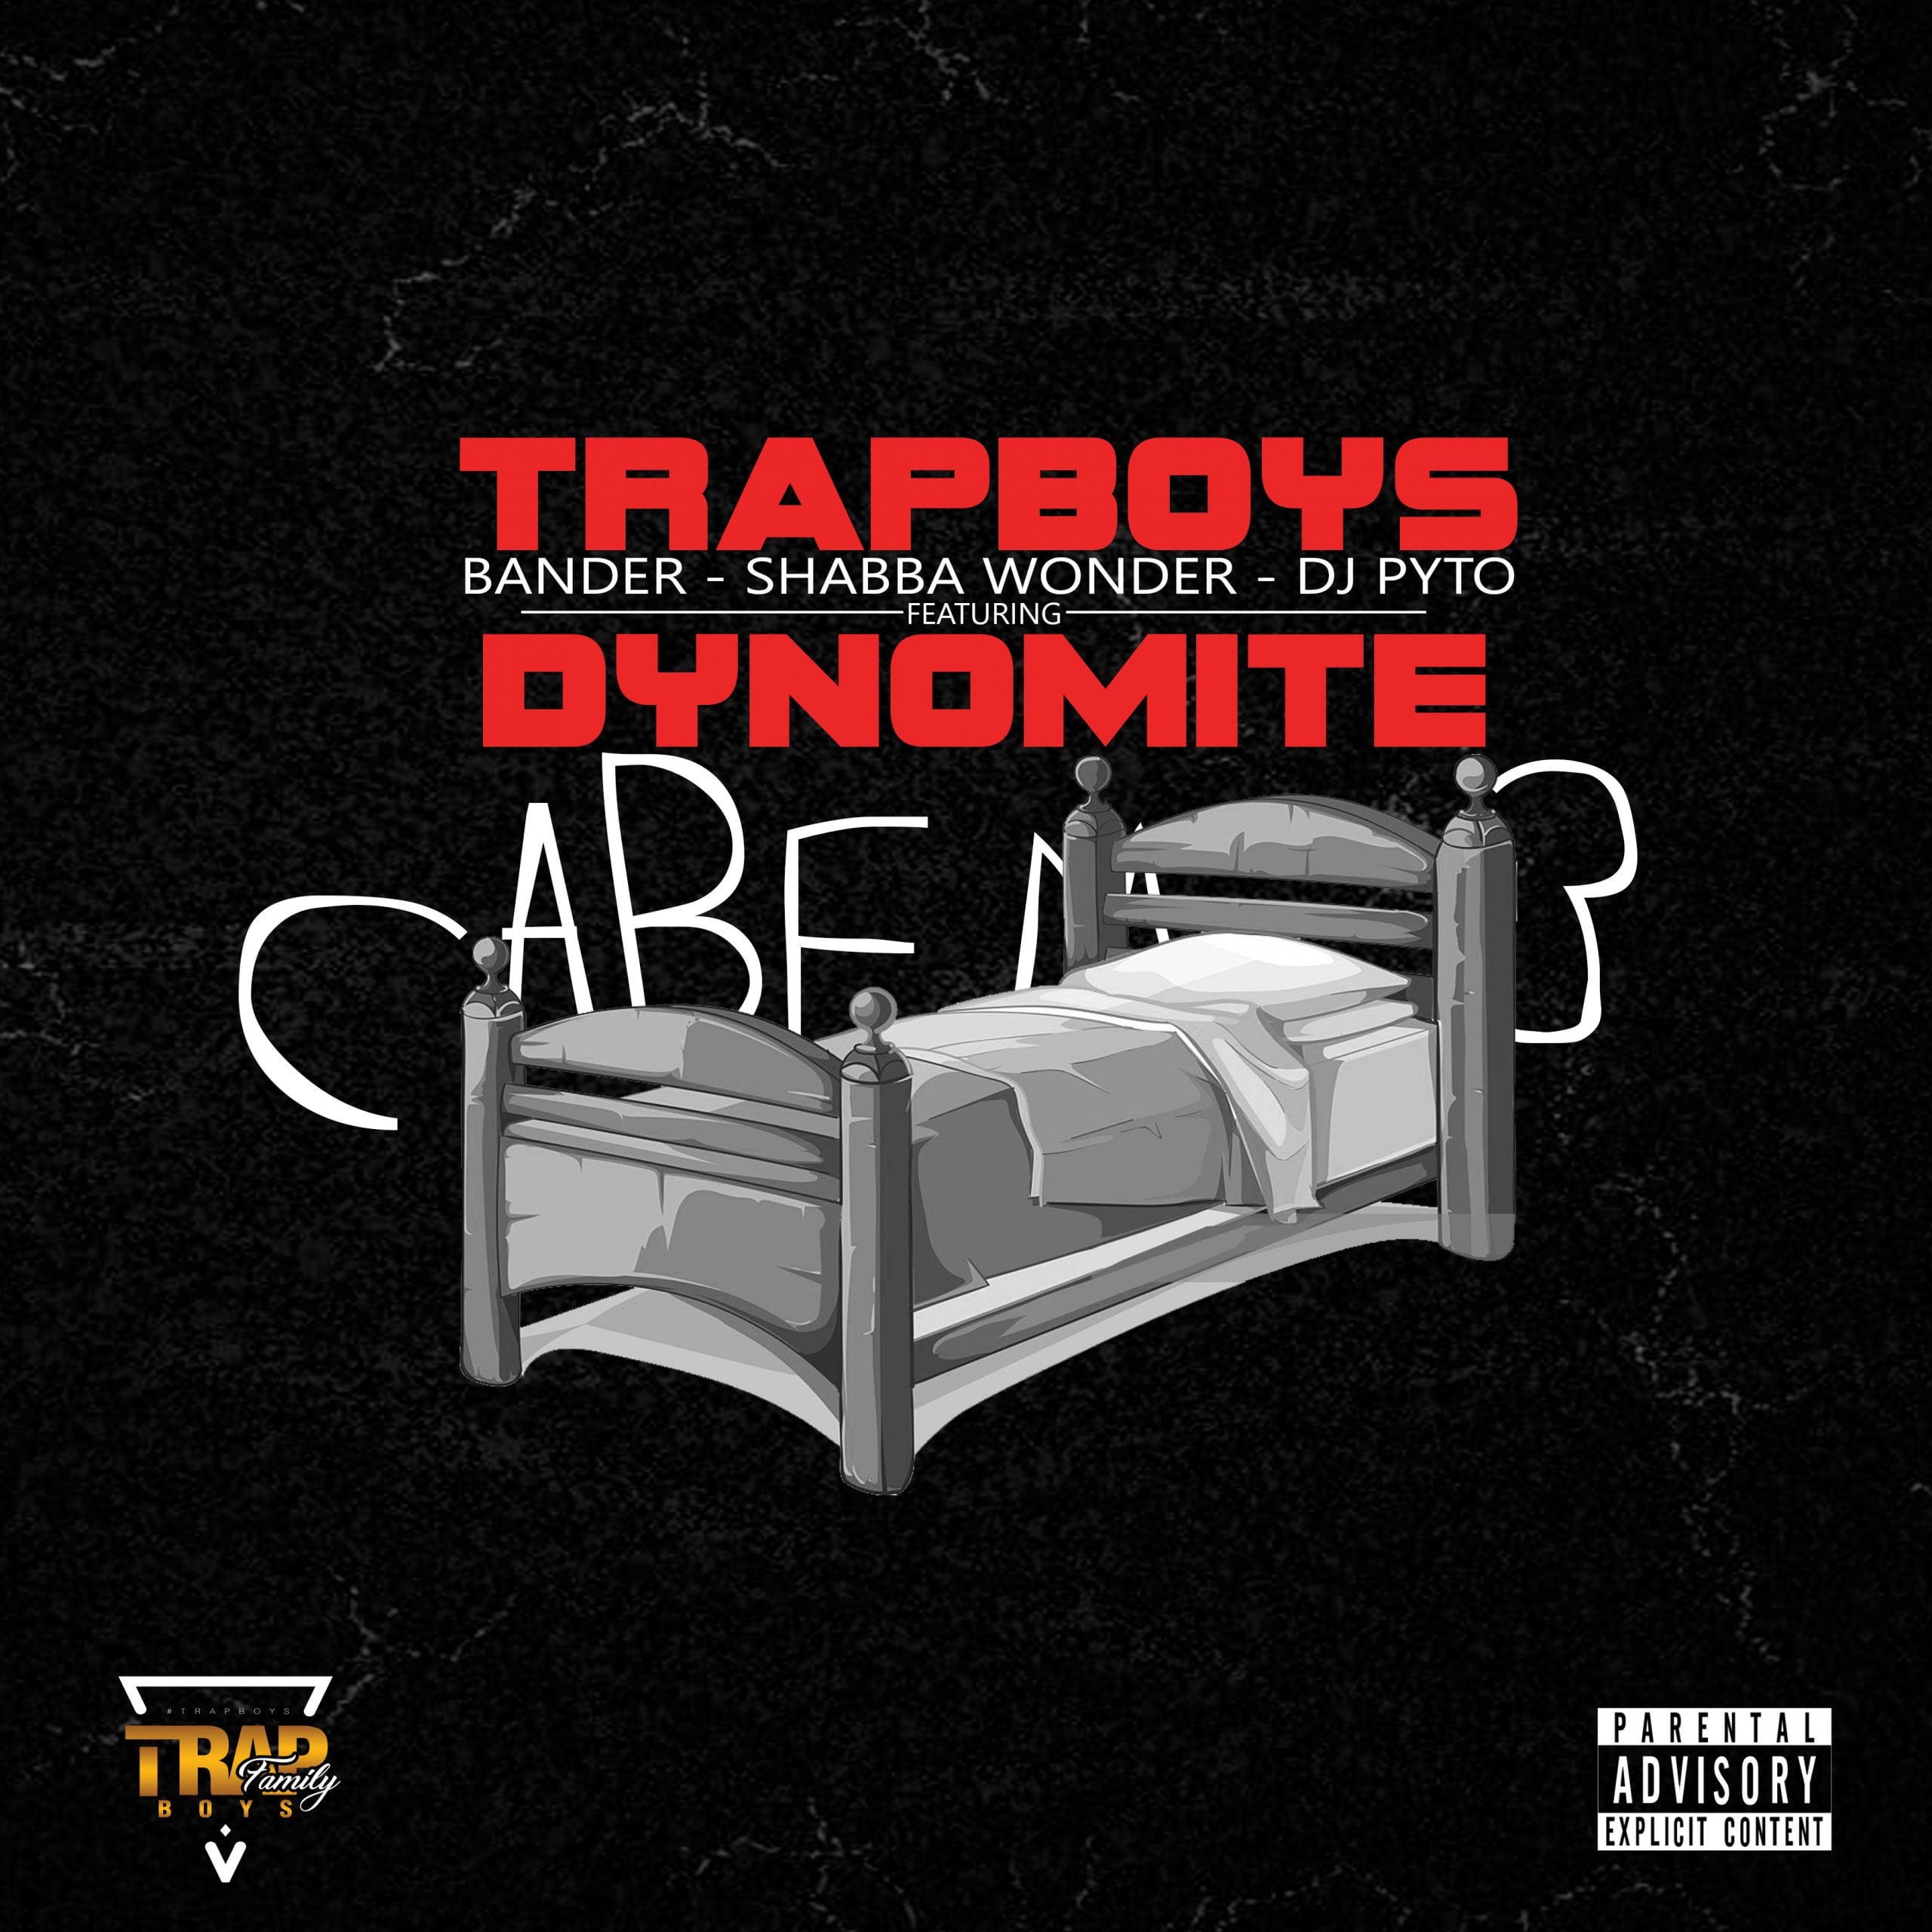 Trap Boys - Cabem 3